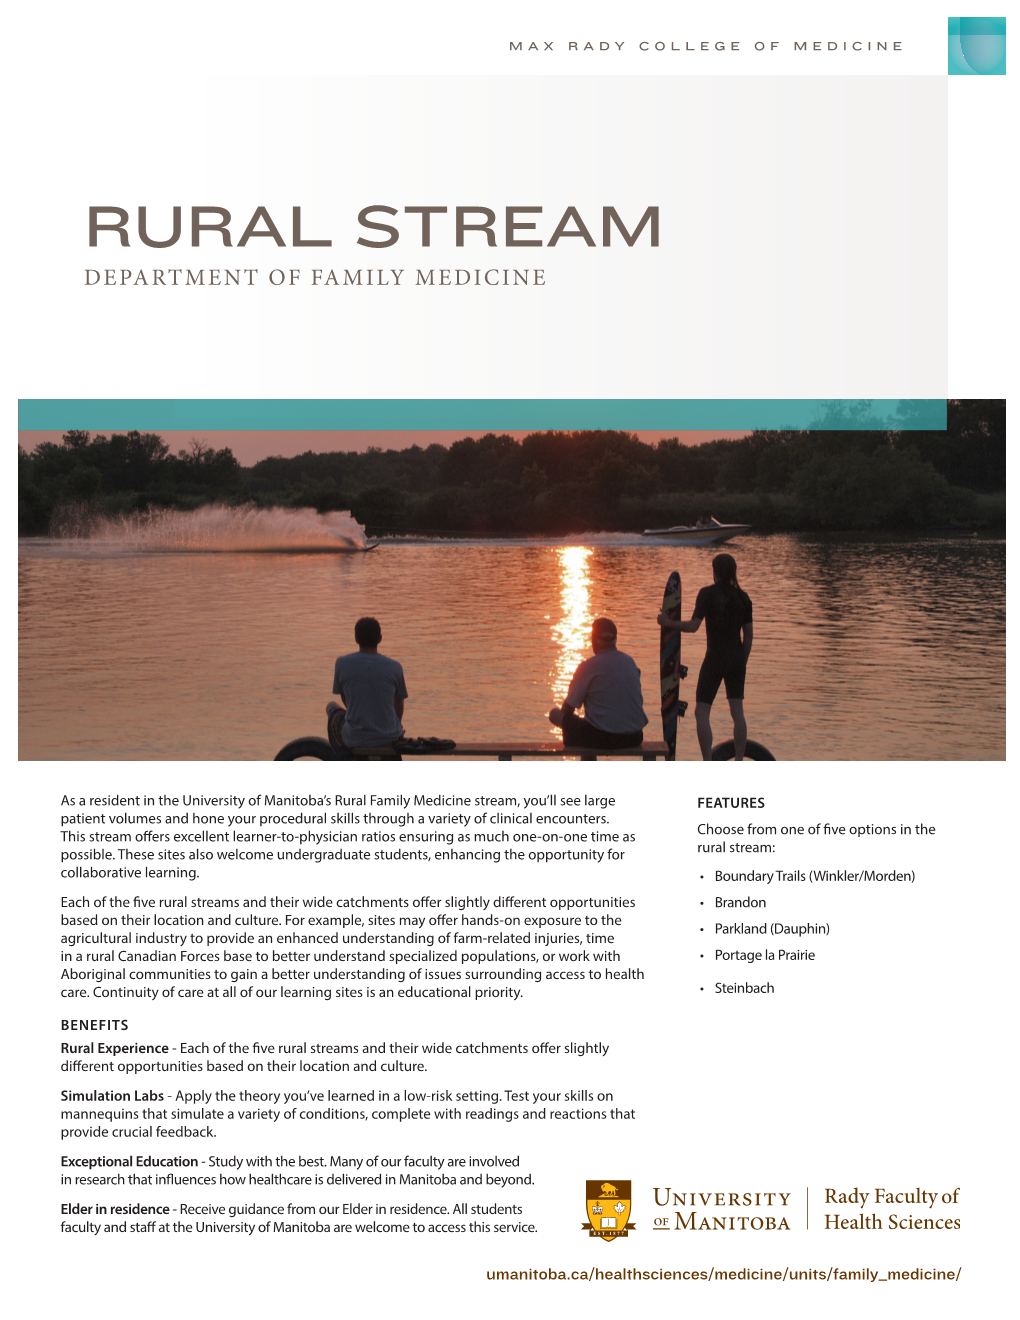 Rural Stream Department of Family Medicine